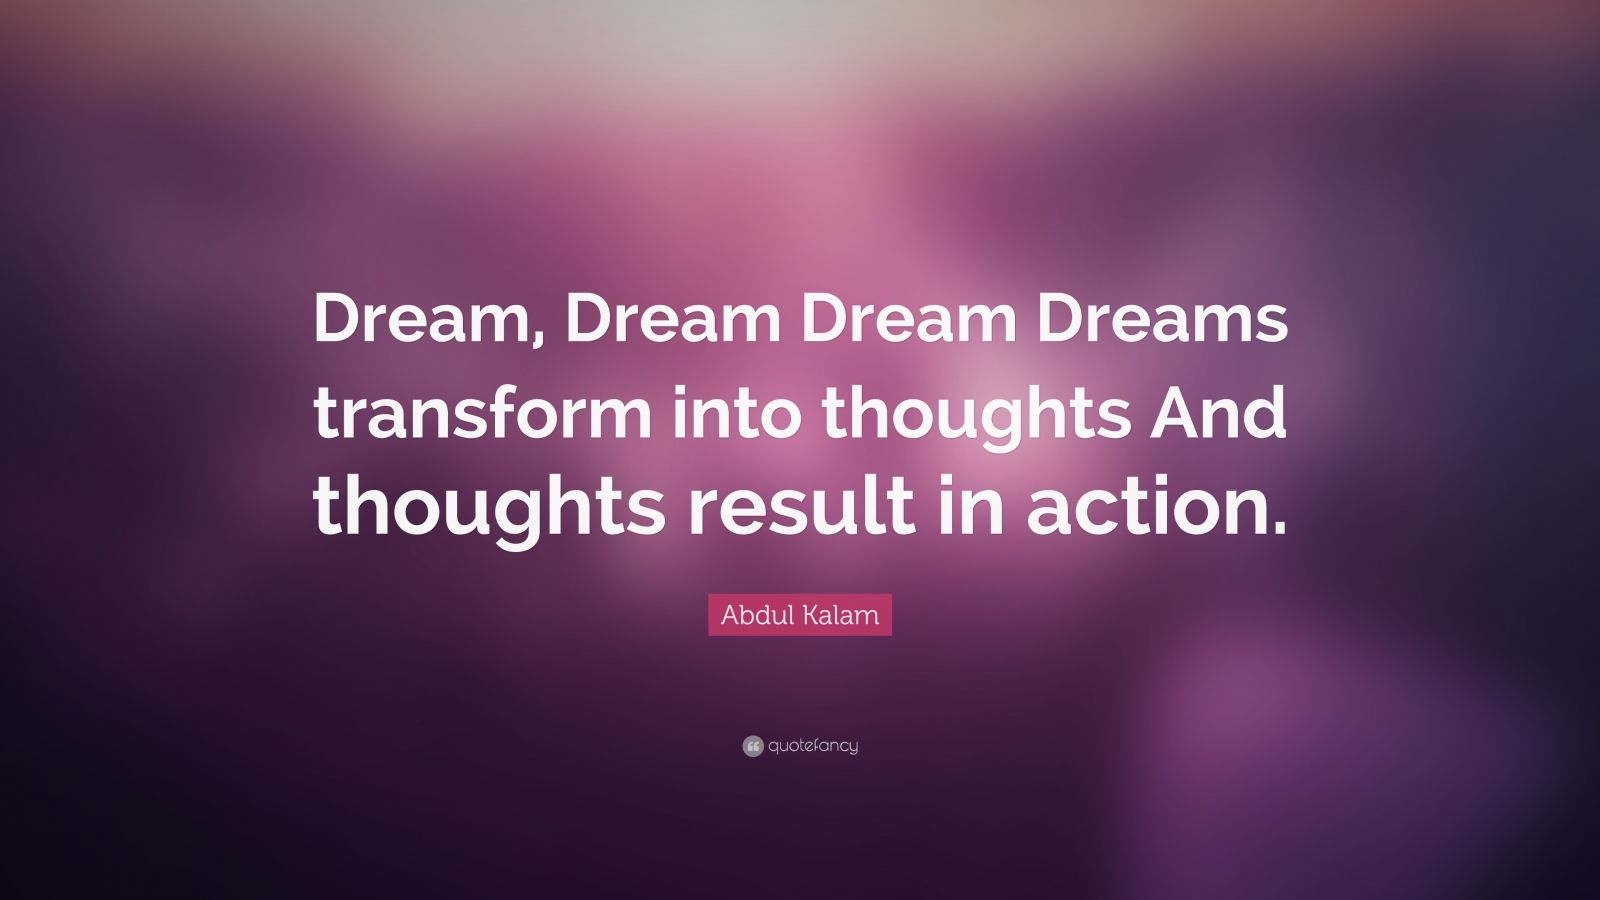 Abdul Kalam Quote: “Dream, Dream Dream Dreams transform into thoughts ...